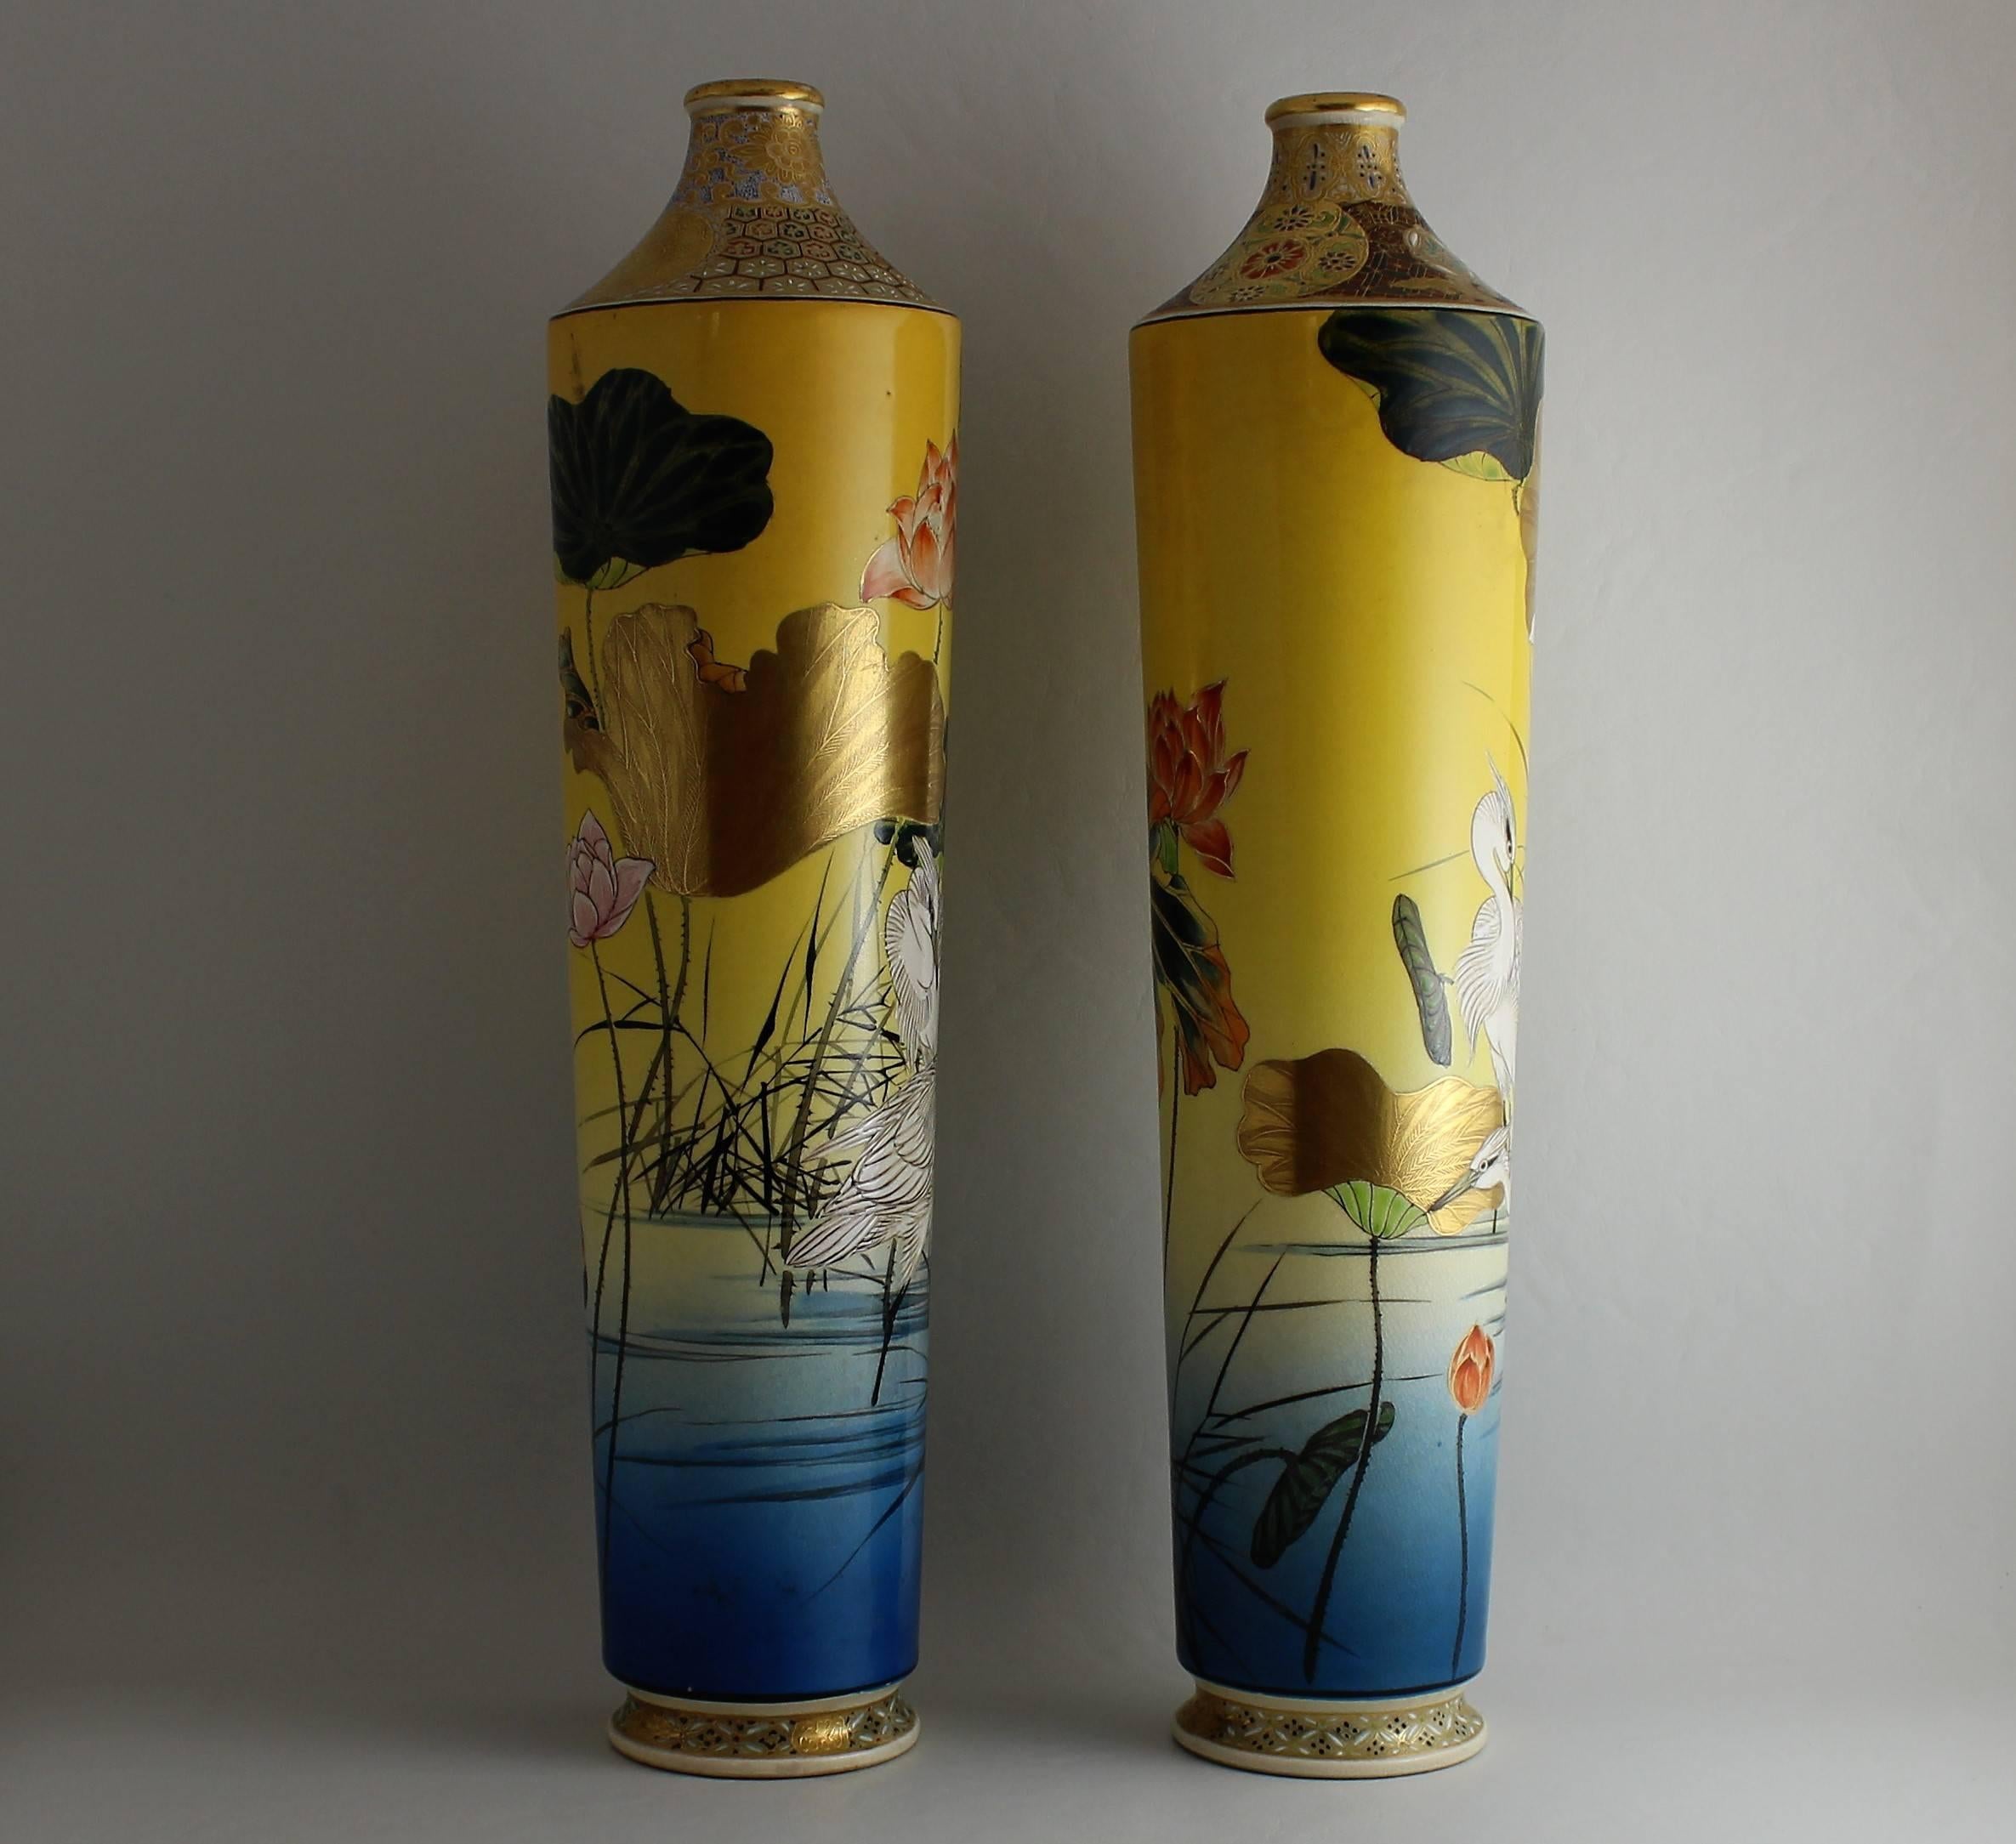 Pair of Meiji period Japanese ceramic Satsuma vase's.